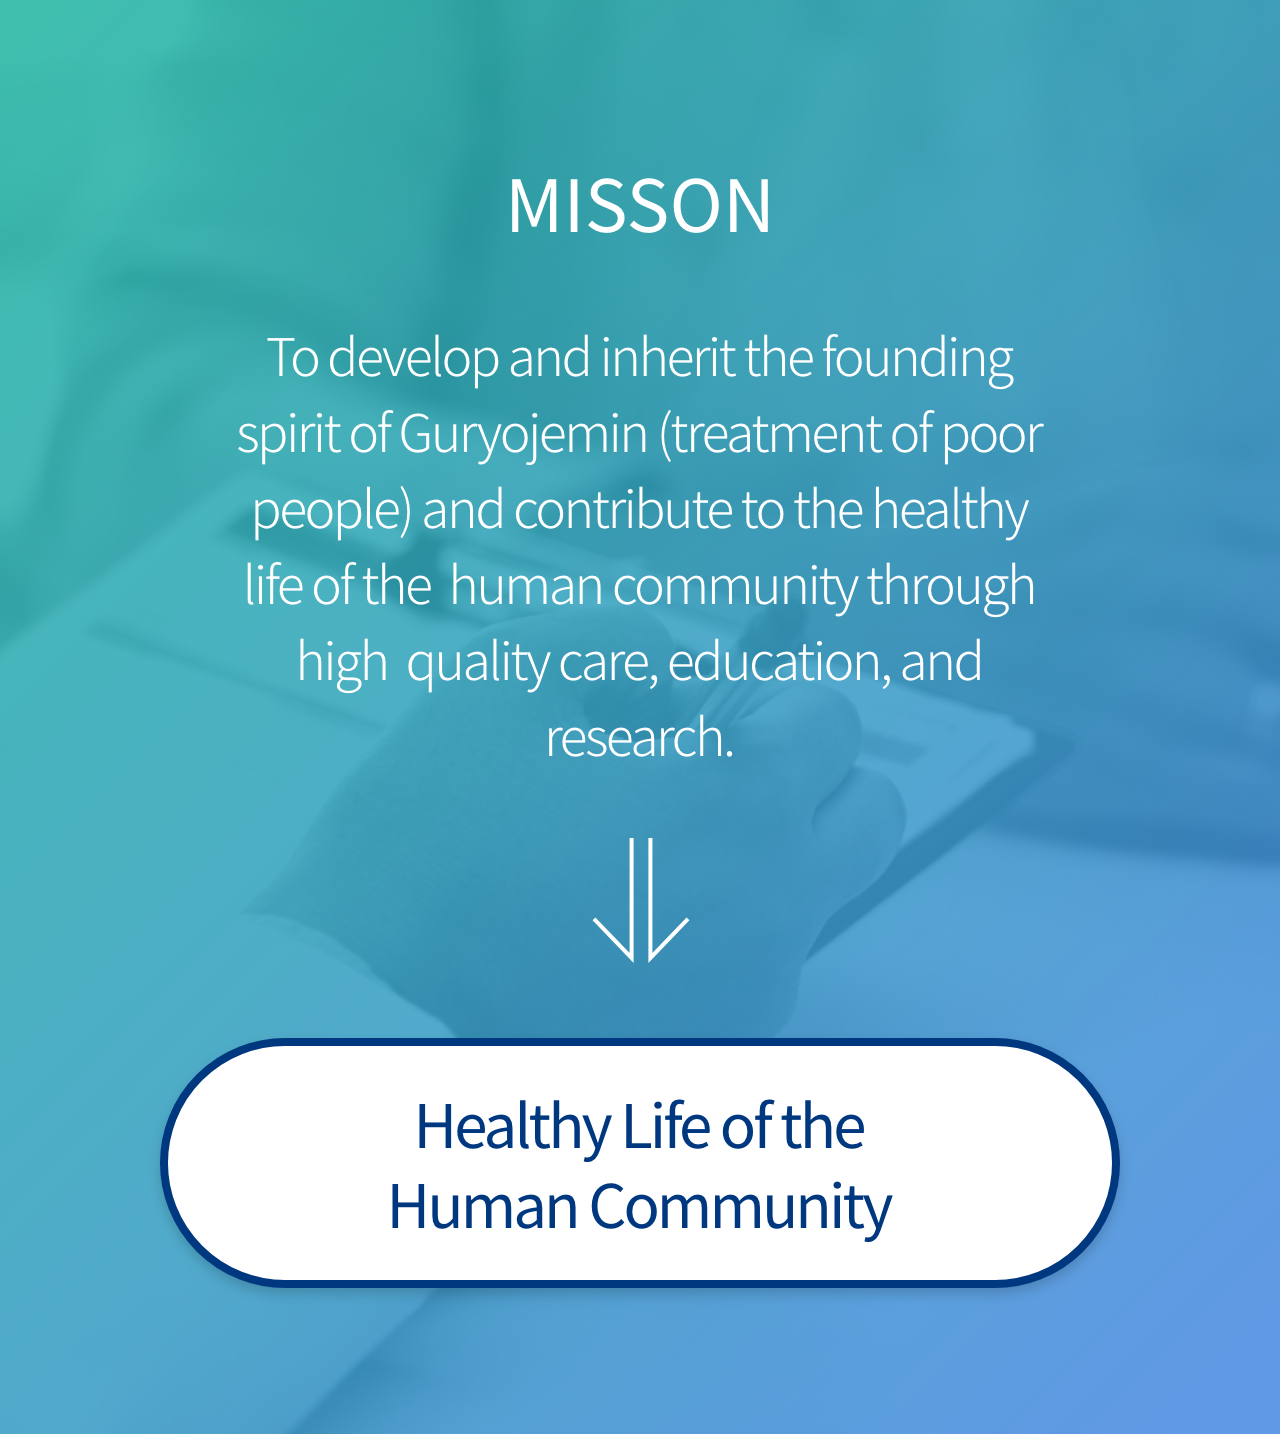 MISSON 구료제민의 창립정신을 발전적으로 계승하고 수준높은 진료, 교육, 연구를 통하여 인류 공동체의 건강한 삶에 기여한다. 인류 공동체의 건강한 삶